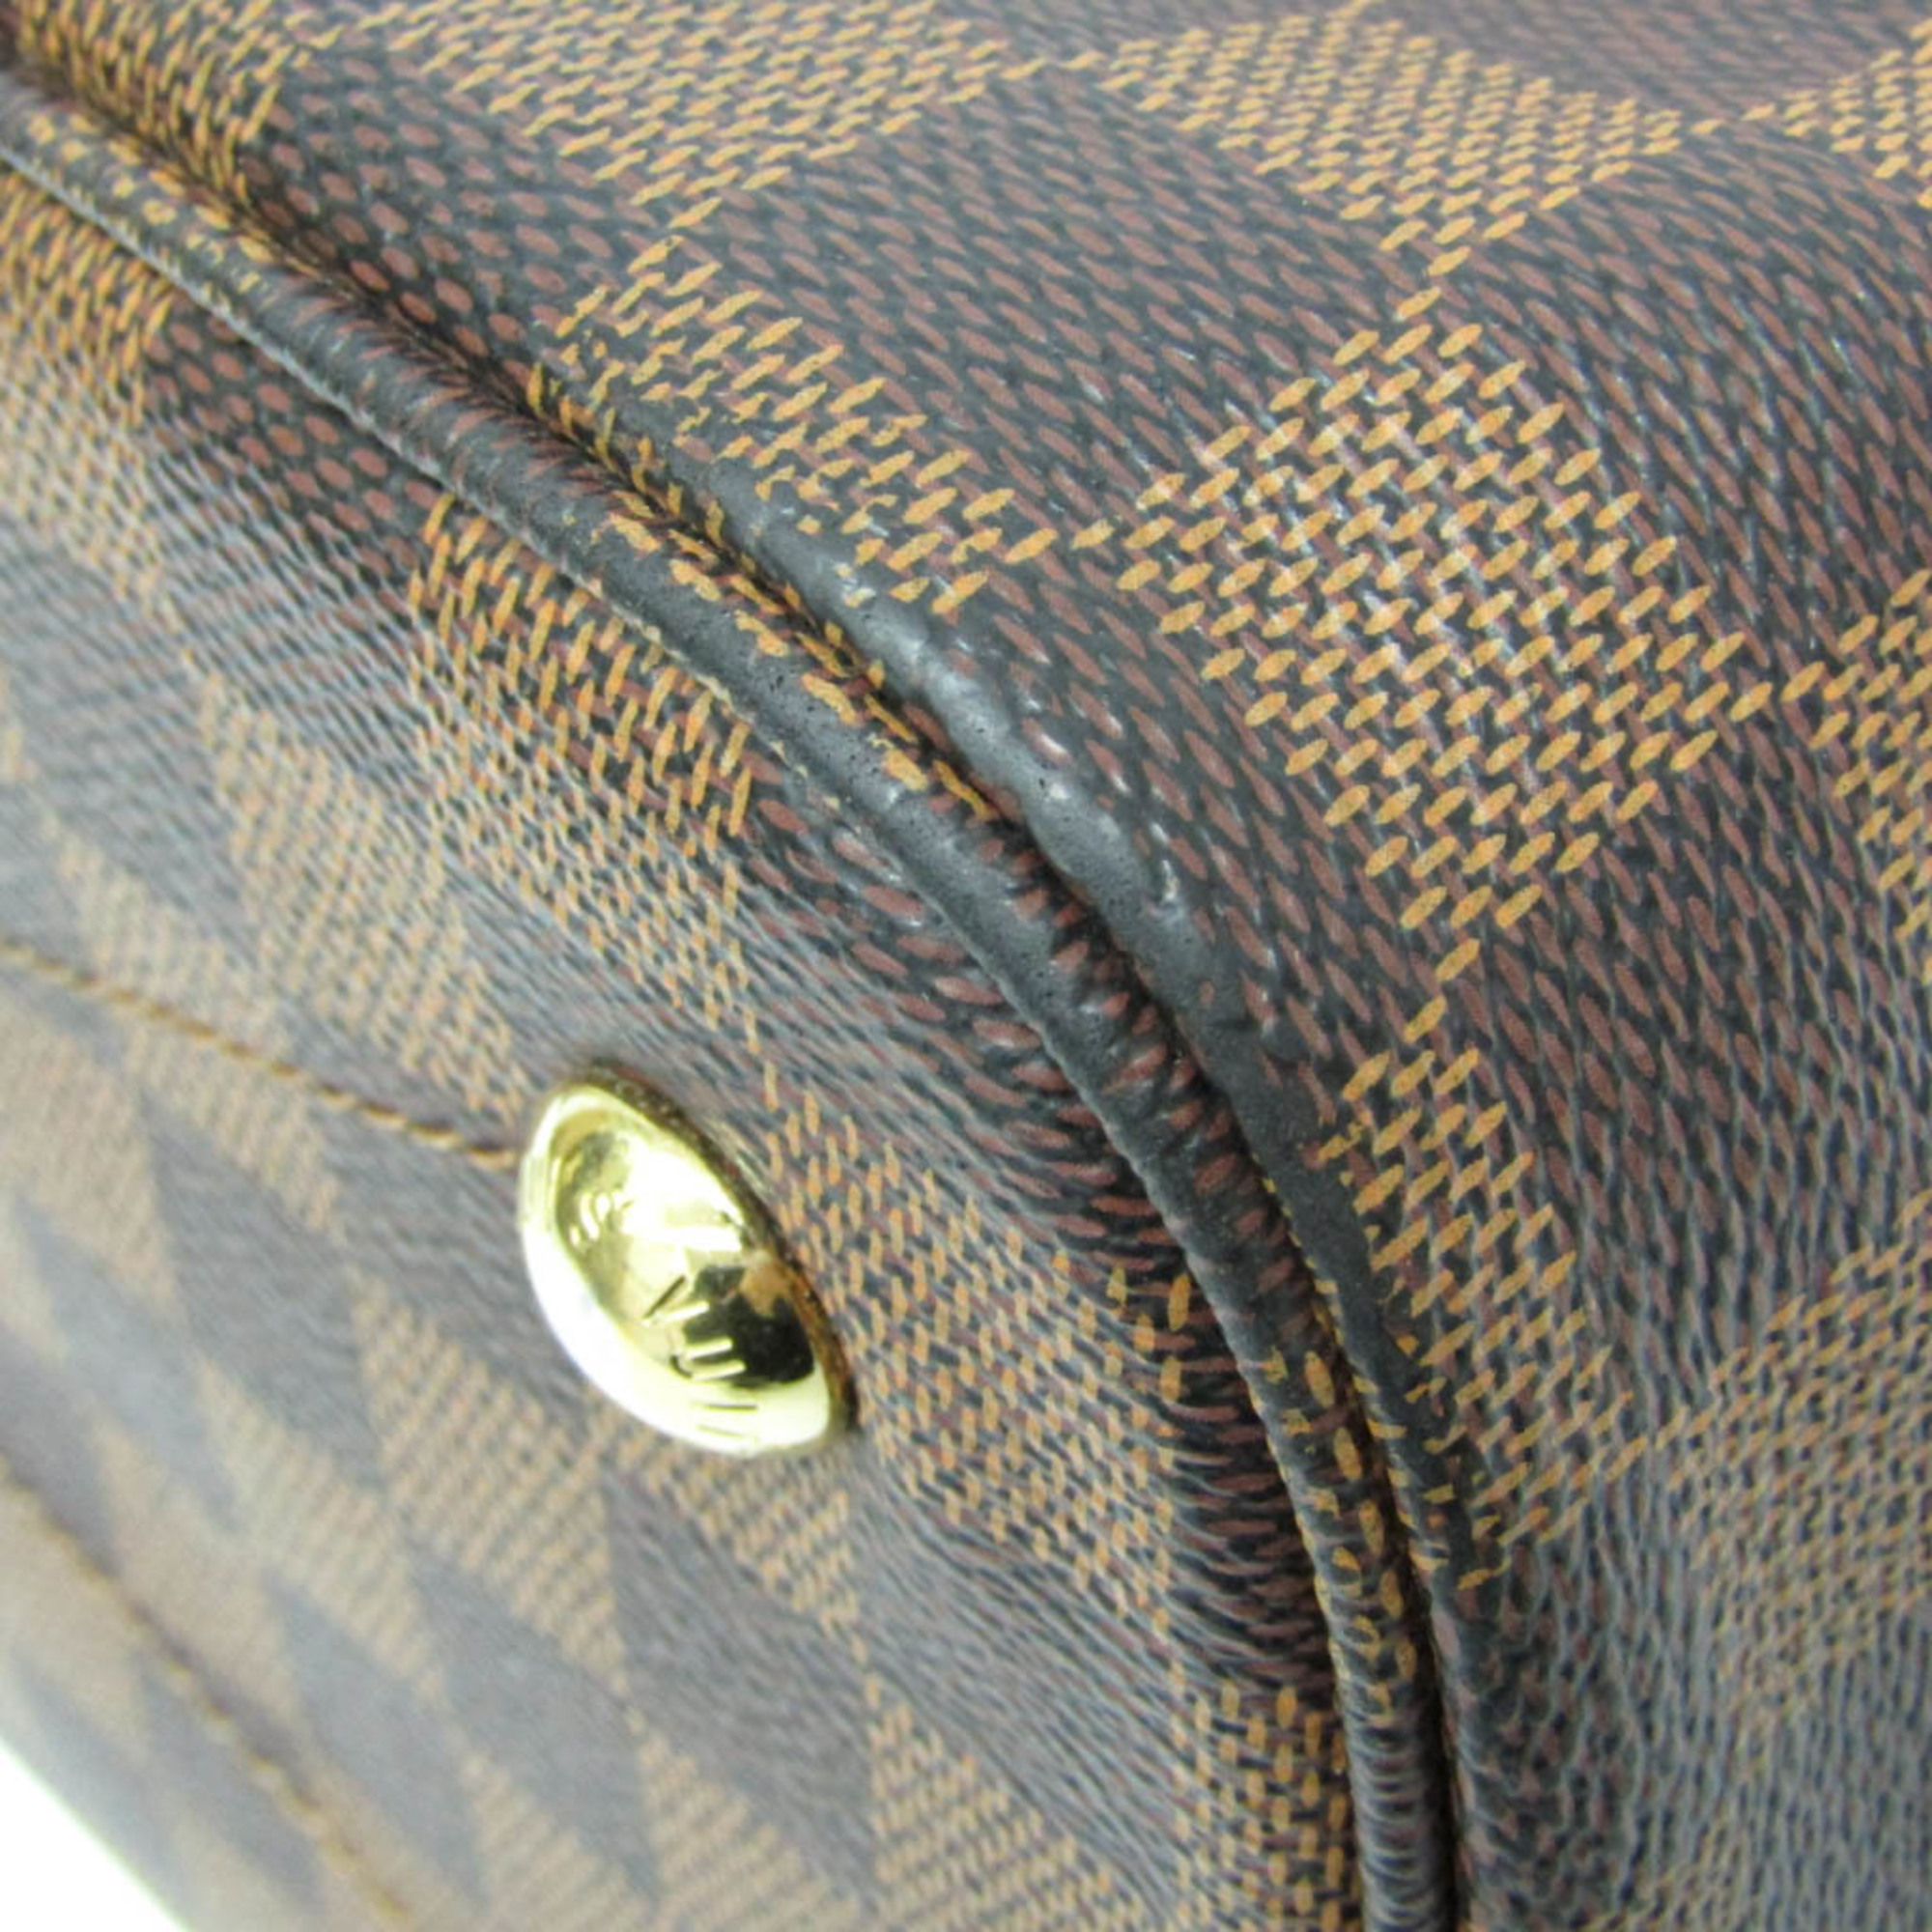 ルイ・ヴィトン(Louis Vuitton) ダミエ アスコット N41273 レディース ハンドバッグ エベヌ